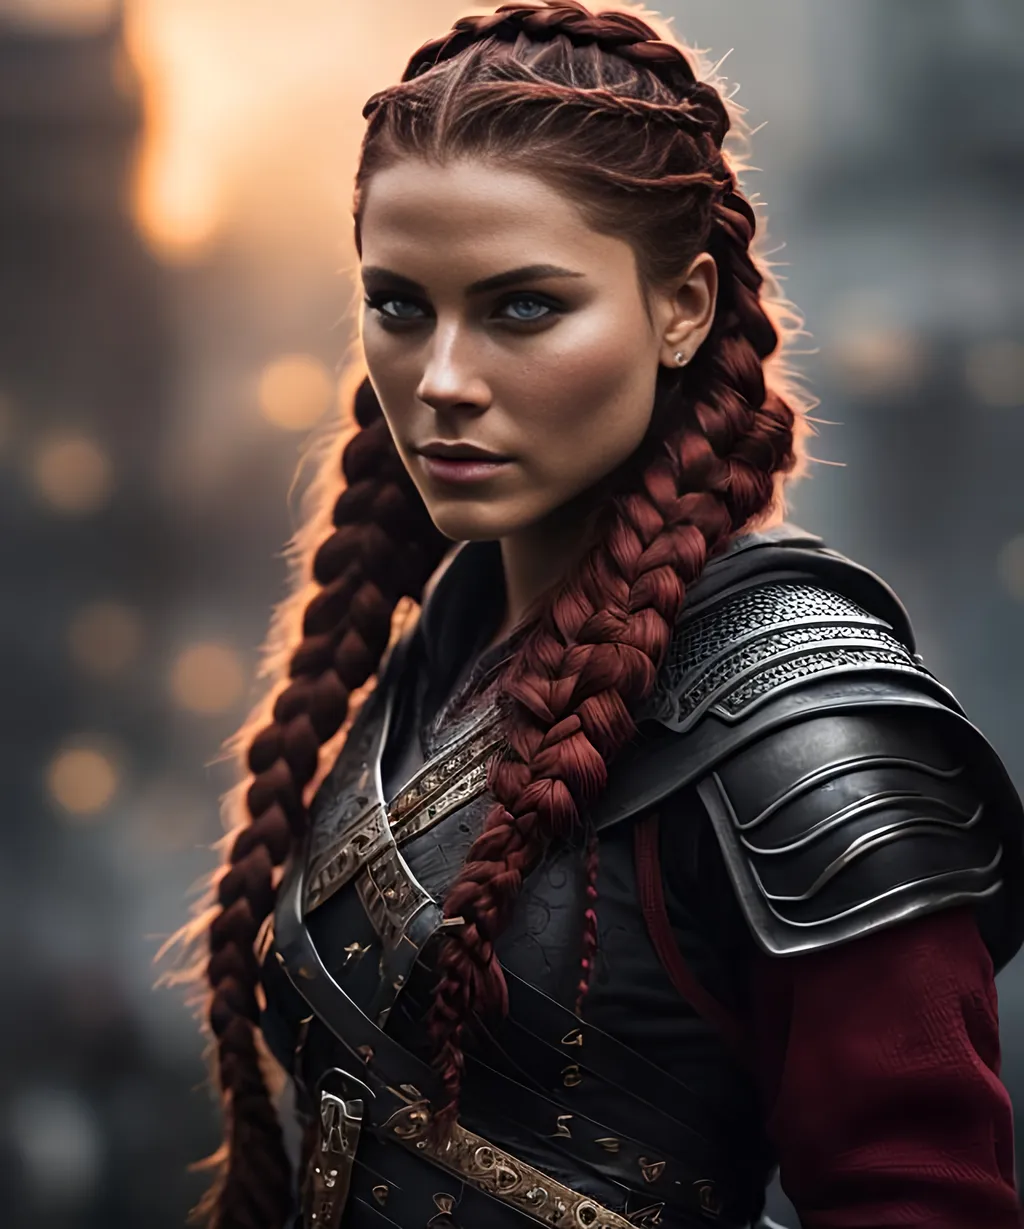 she has red braided cornrow hair, create most beauti...